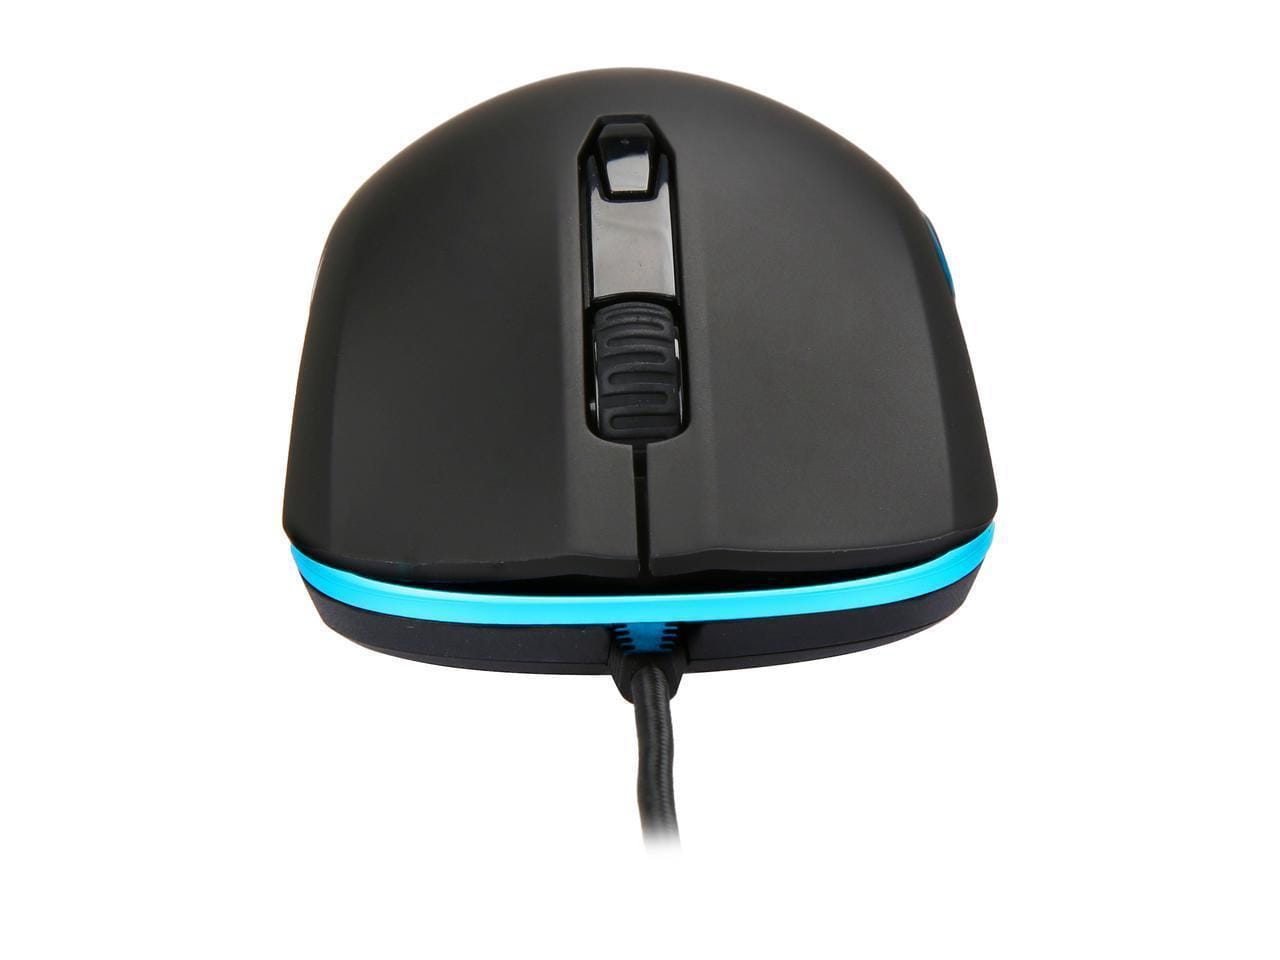 Mouse Kingston HyperX Pulsefire SURGE / 800–3200 DPI / Pixart 3389 sensor / HX-MC002B